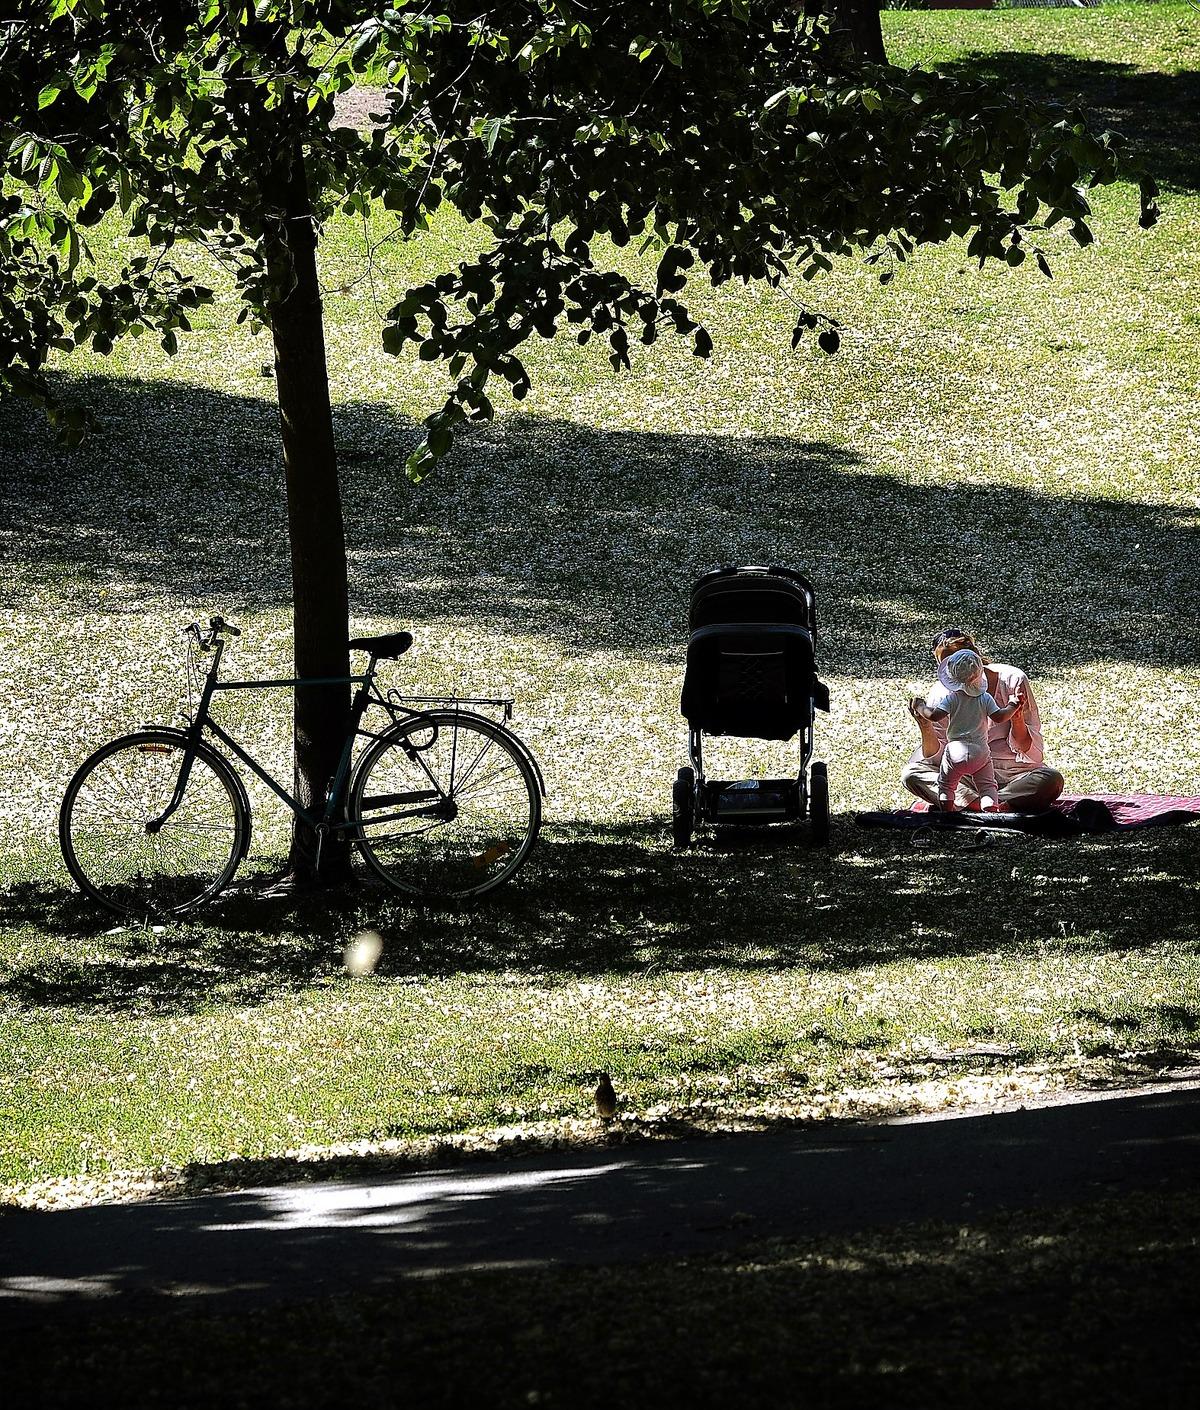 FÖRÄNDRADE BOENDEMÖNSTER Det är inte längre självklart för familjer att söka sig till förorten när de får barn. Det ställer därför högre krav på städerna att bli mer barnvänliga. Ett sätt är att skapa fler grönområden, som det här i Vasaparken i Stockholm.